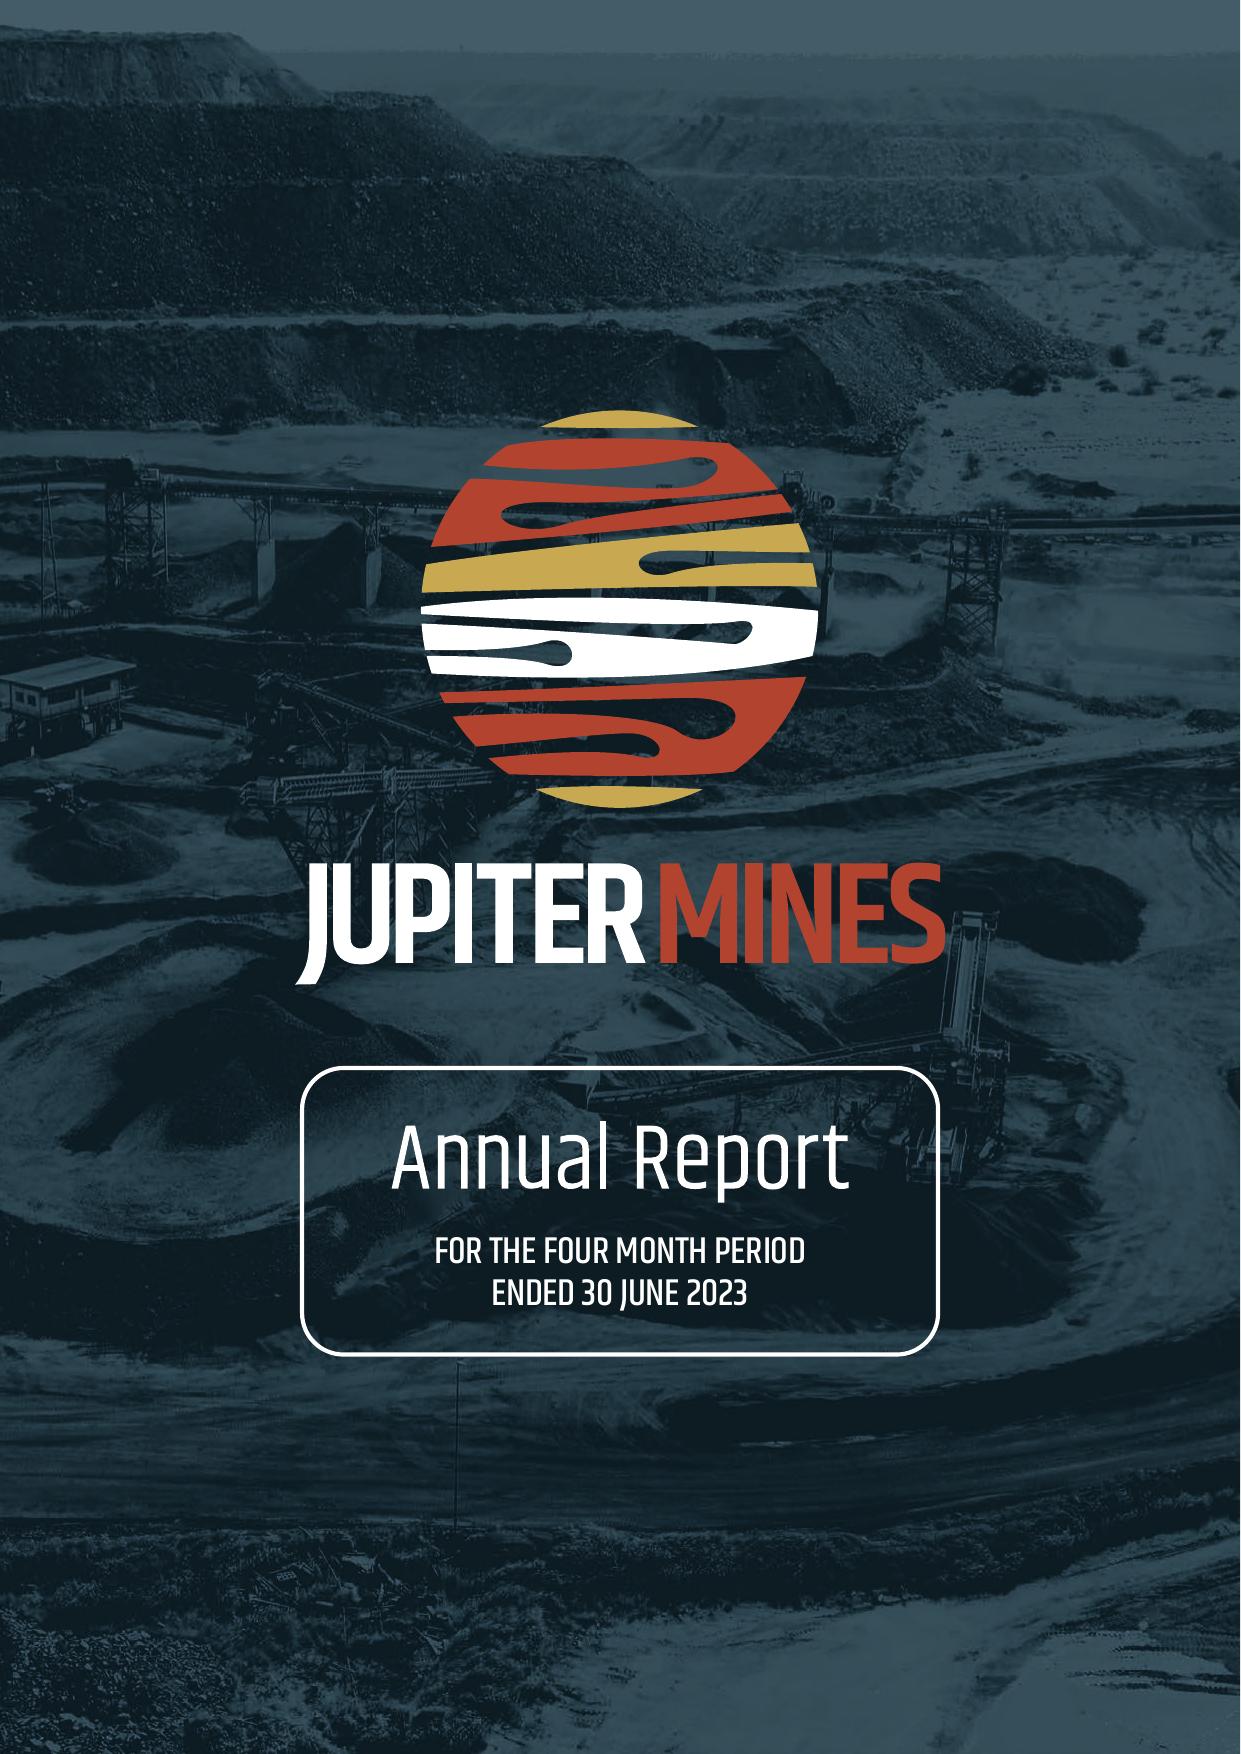 JUPITERMINES 2023 Annual Report